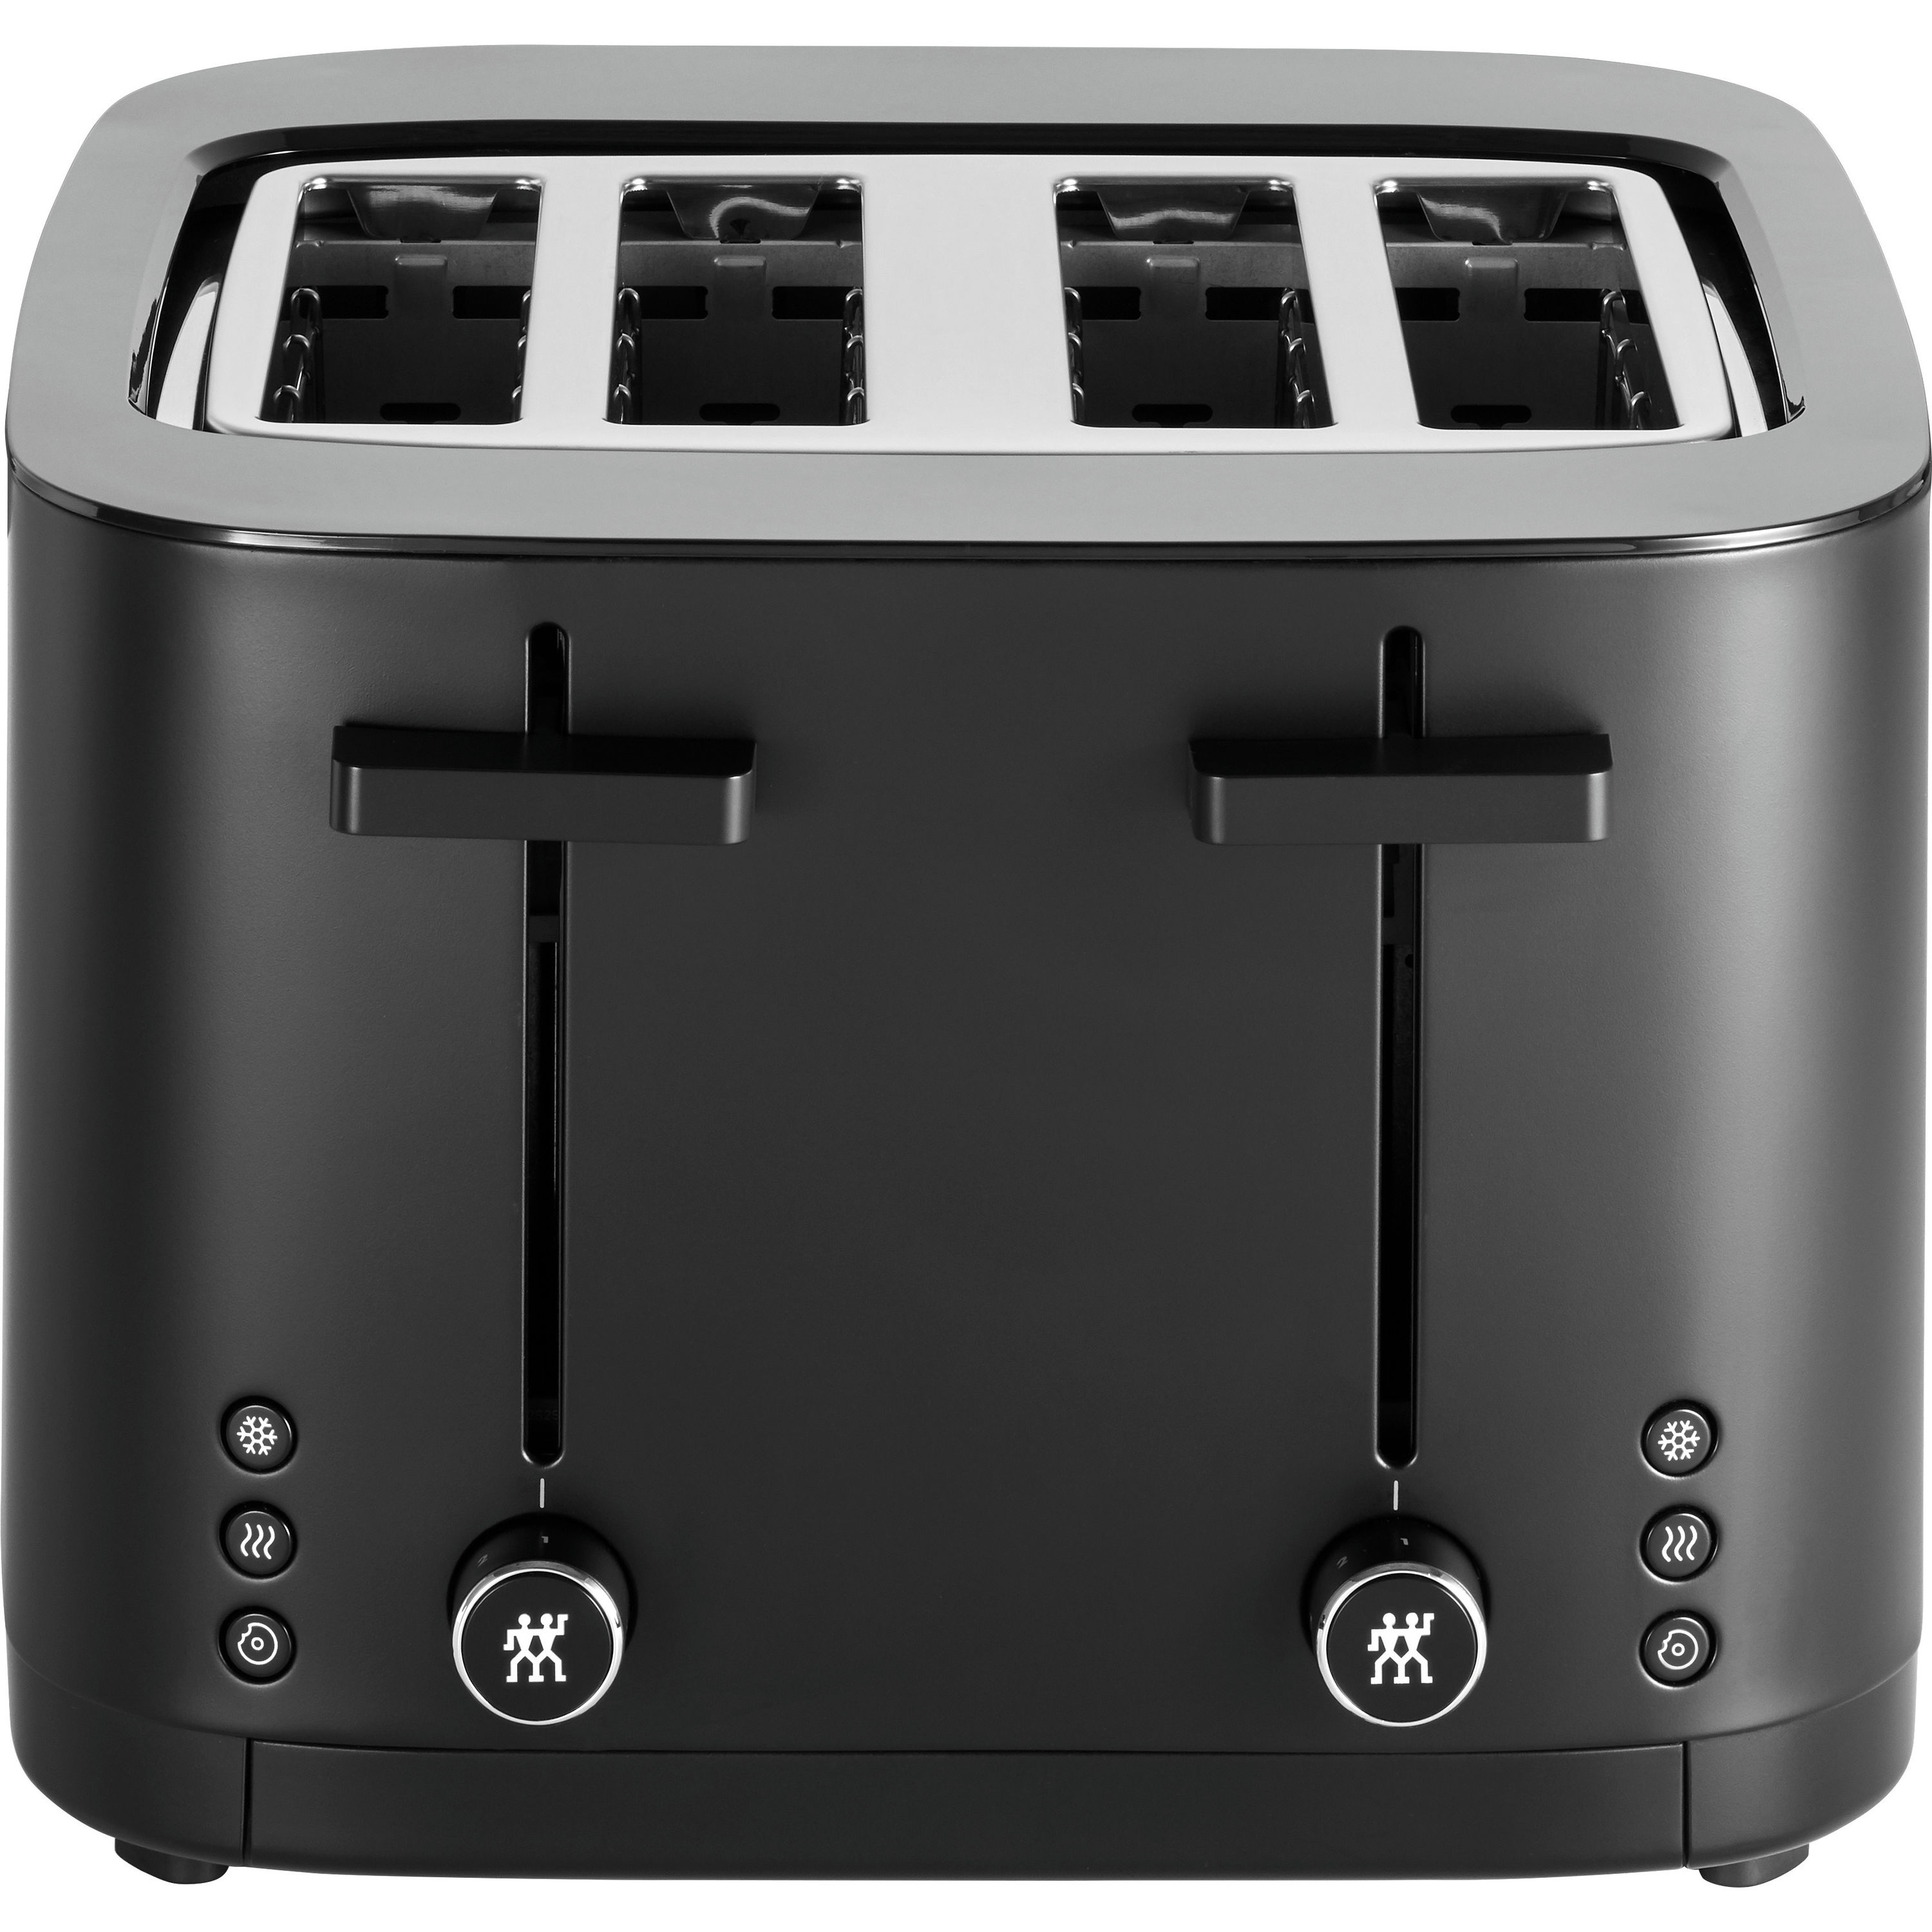 ZWILLING Enfinigy 4 Slot Toaster - Black